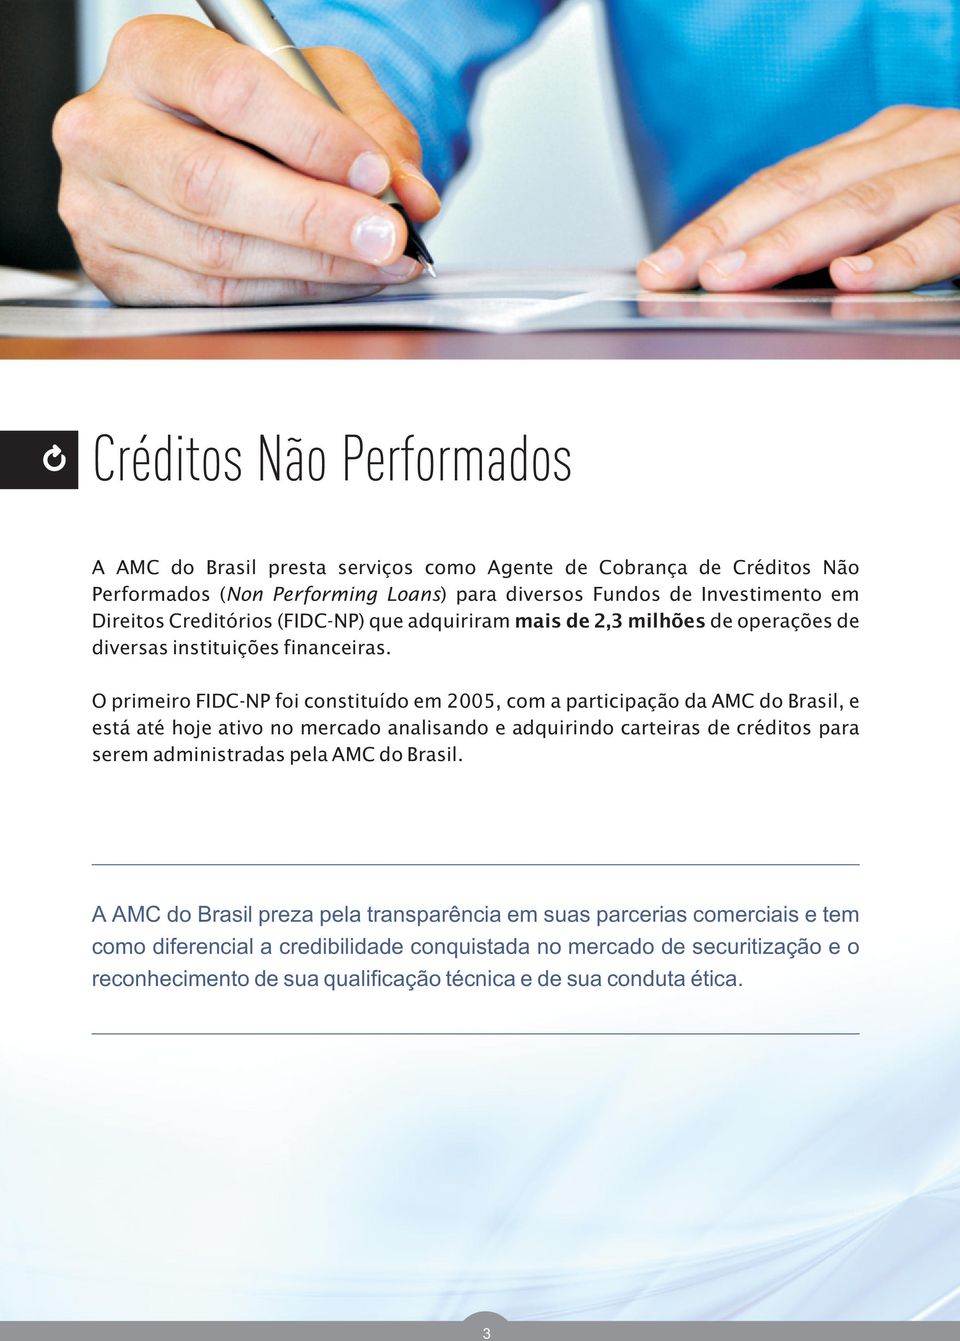 O primeiro FIDC-NP foi constituído em 2005, com a participação da AMC do Brasil, e está até hoje ativo no mercado analisando e adquirindo carteiras de créditos para serem